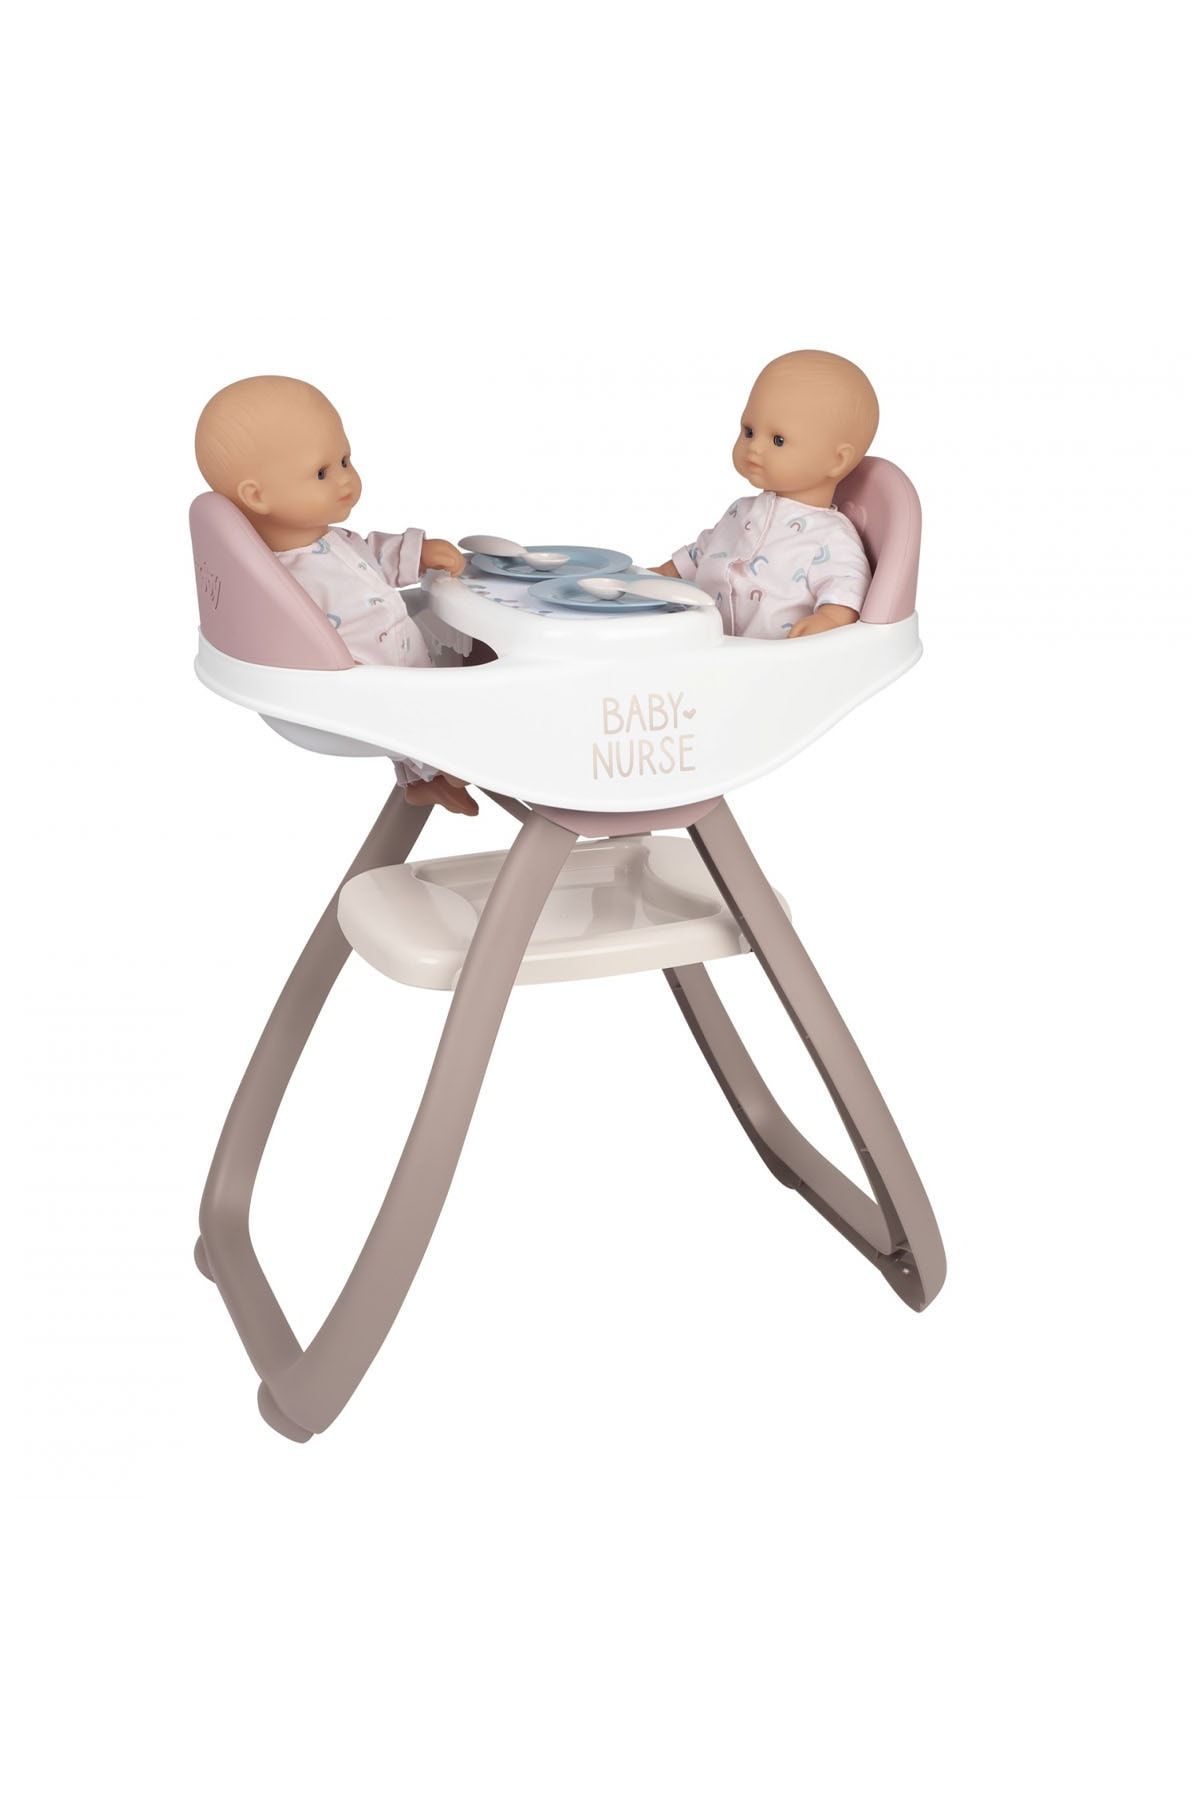 Smoby Baby Nurse İkiz Bebek Oyuncak Mama Sandalyesi